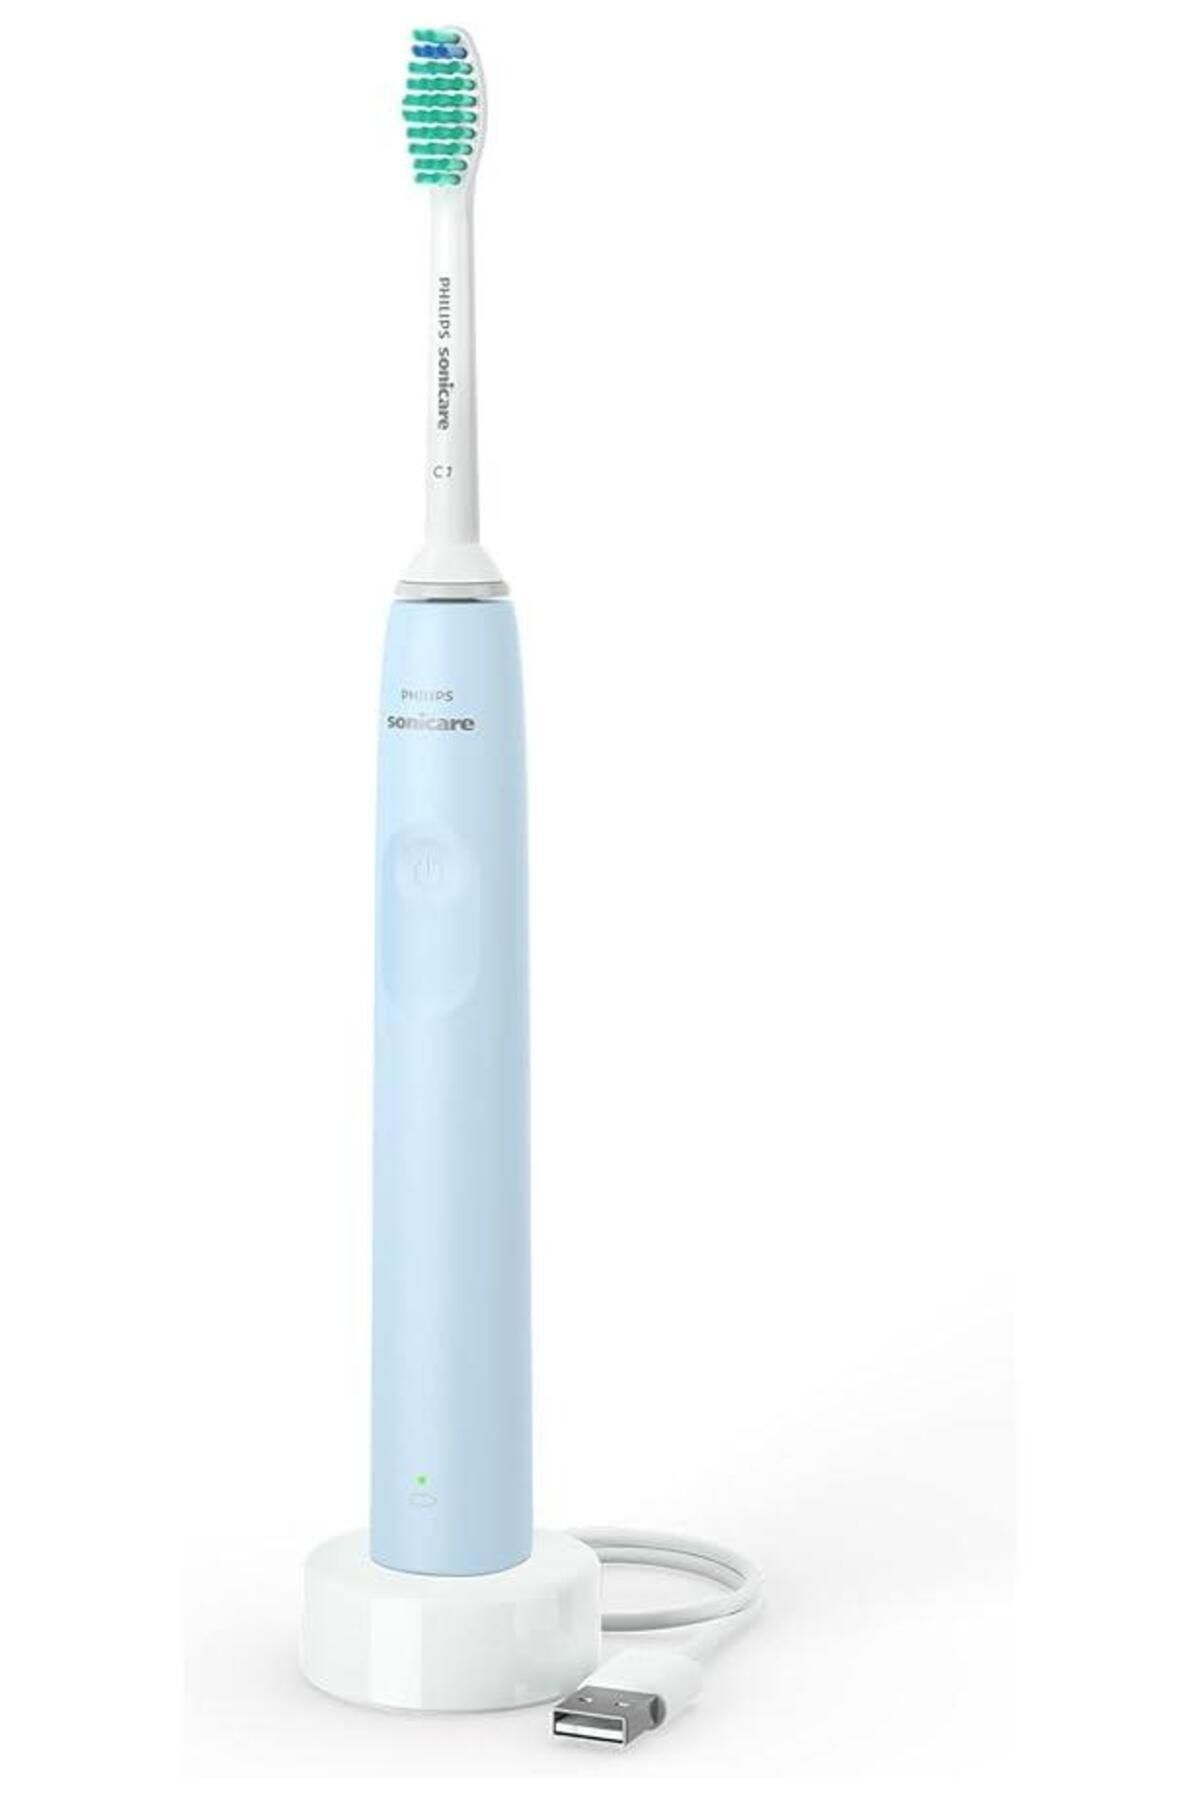 Philips Şarj Edilebilir Diş Fırçası Sonicare Hx3641/02 Sonic Diş Fırçası 7837seri